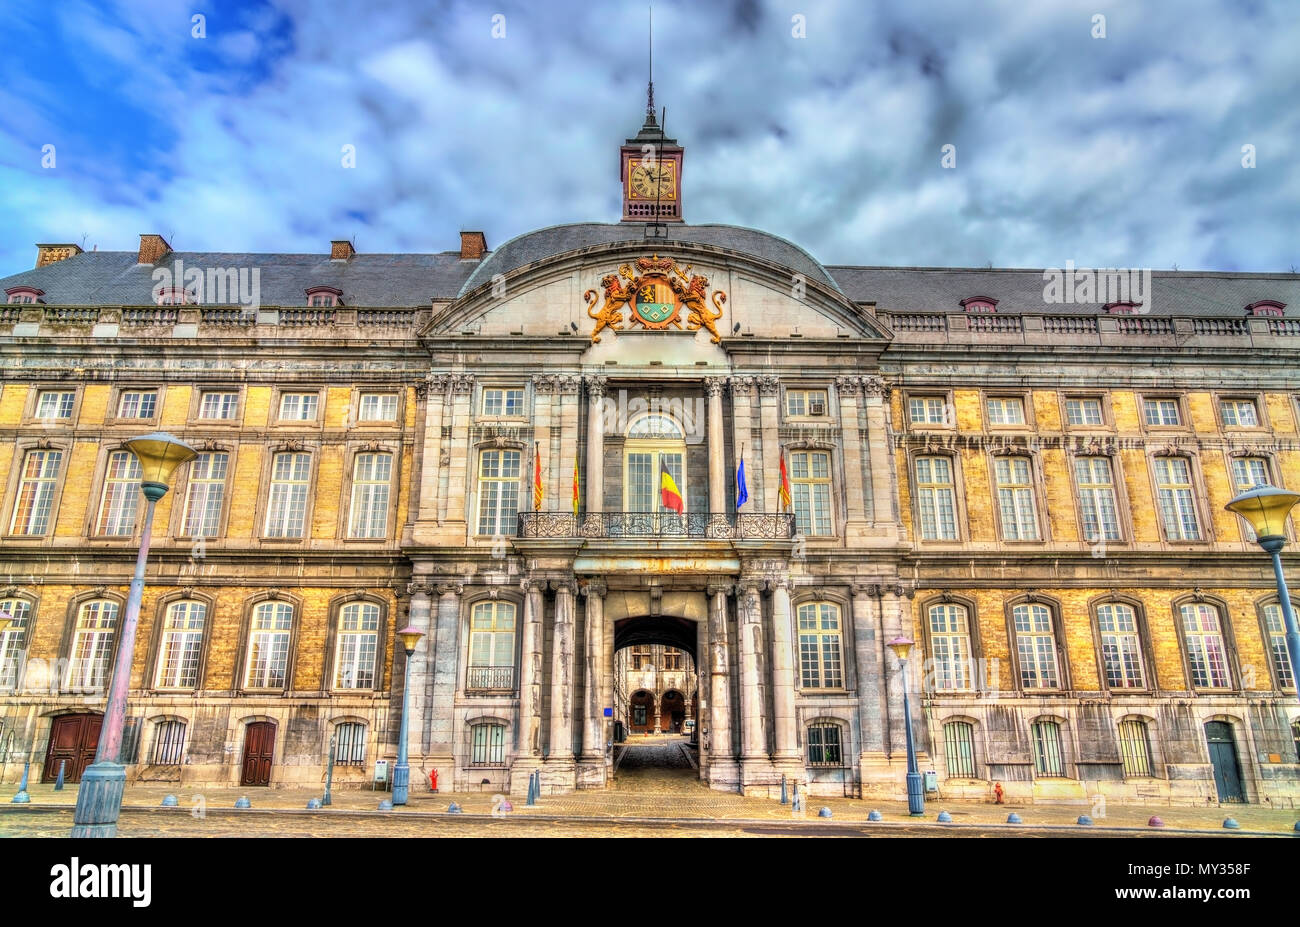 Le Palais des Princes-Évêques sur la Place Saint-Lambert à Liège, Belgique Banque D'Images